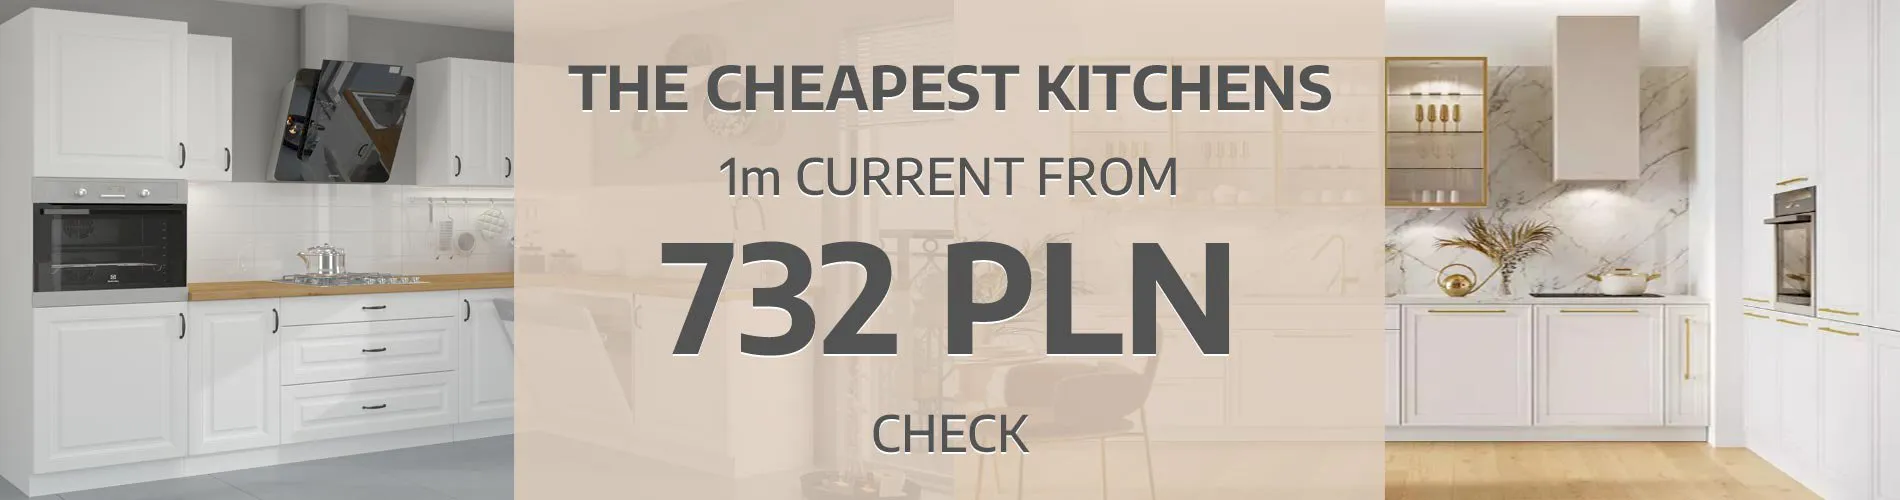 The cheapest kitchen furniture